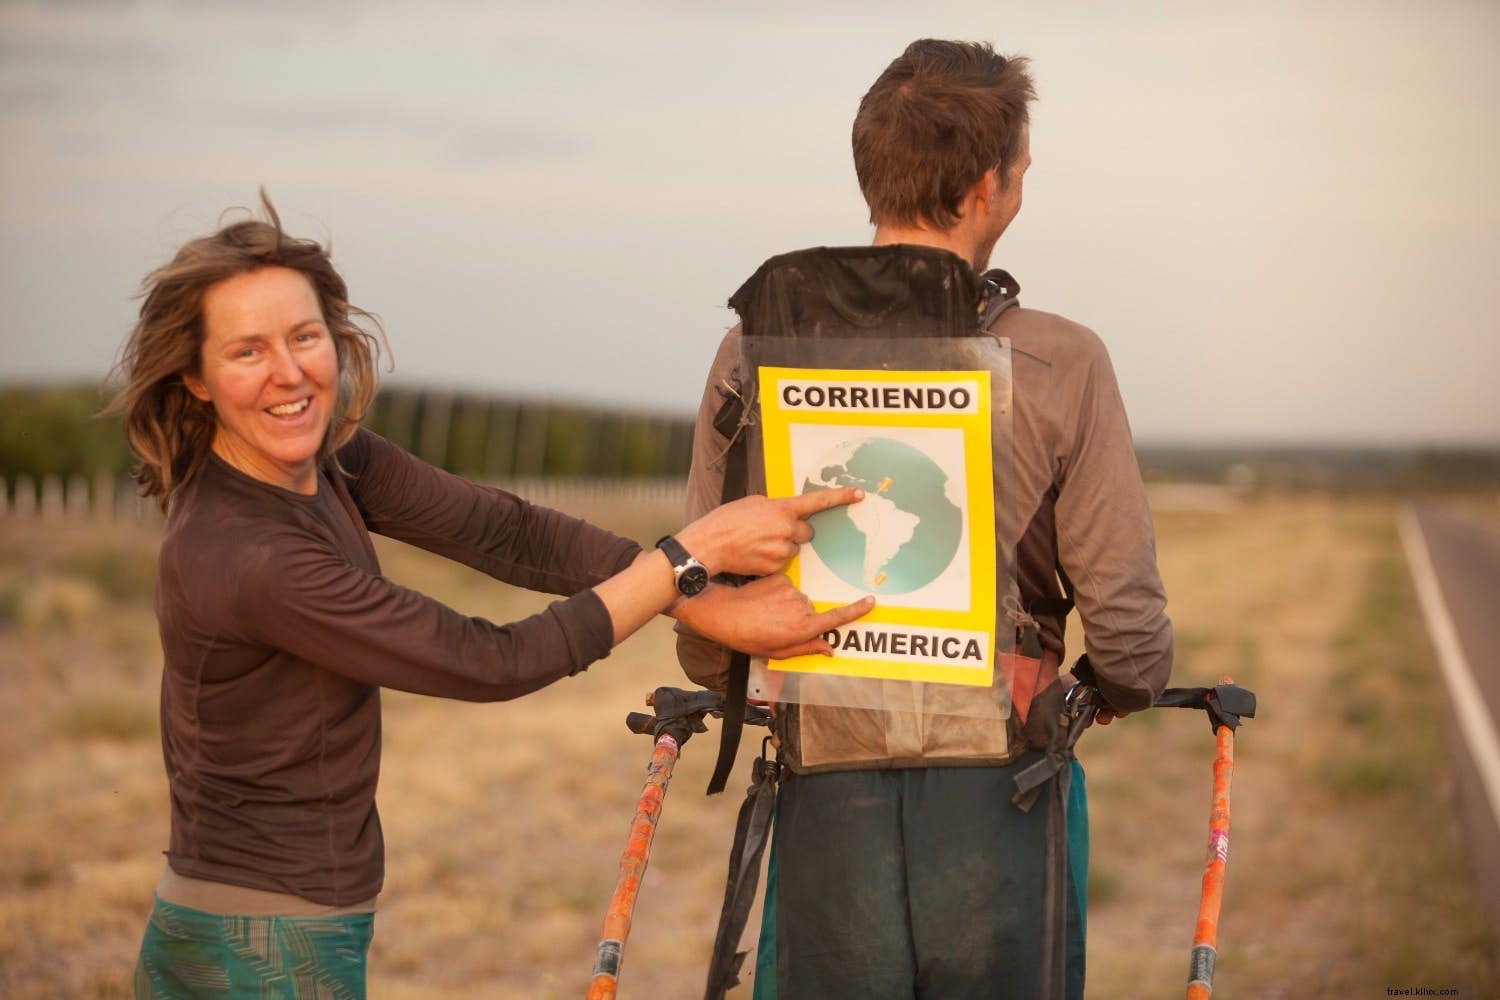  A existência mais bonita e simples :um casal compartilha sua experiência de correr 5.000 milhas pela América do Sul 